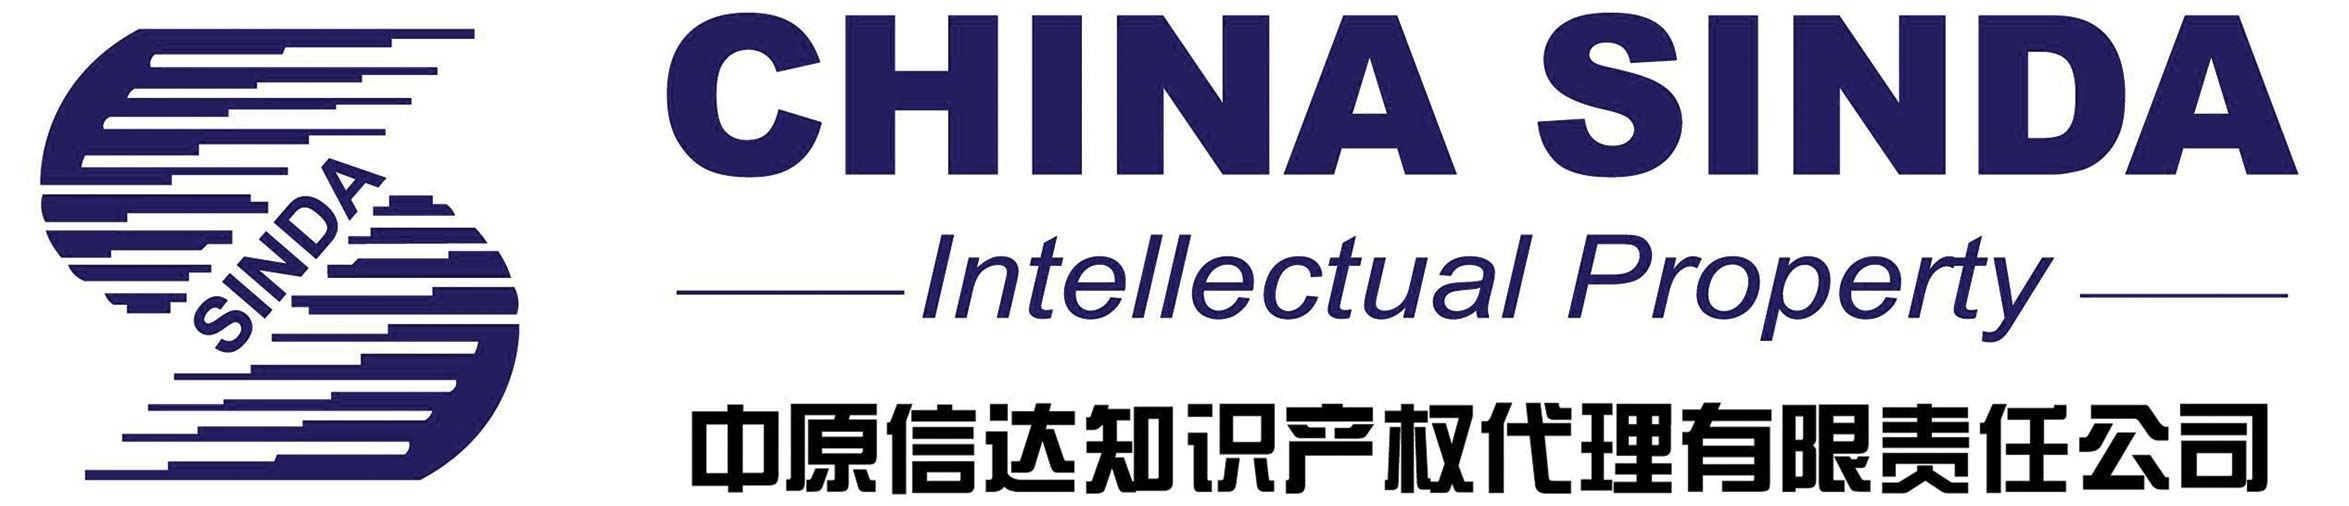 China-Sinda-Logo-cropped